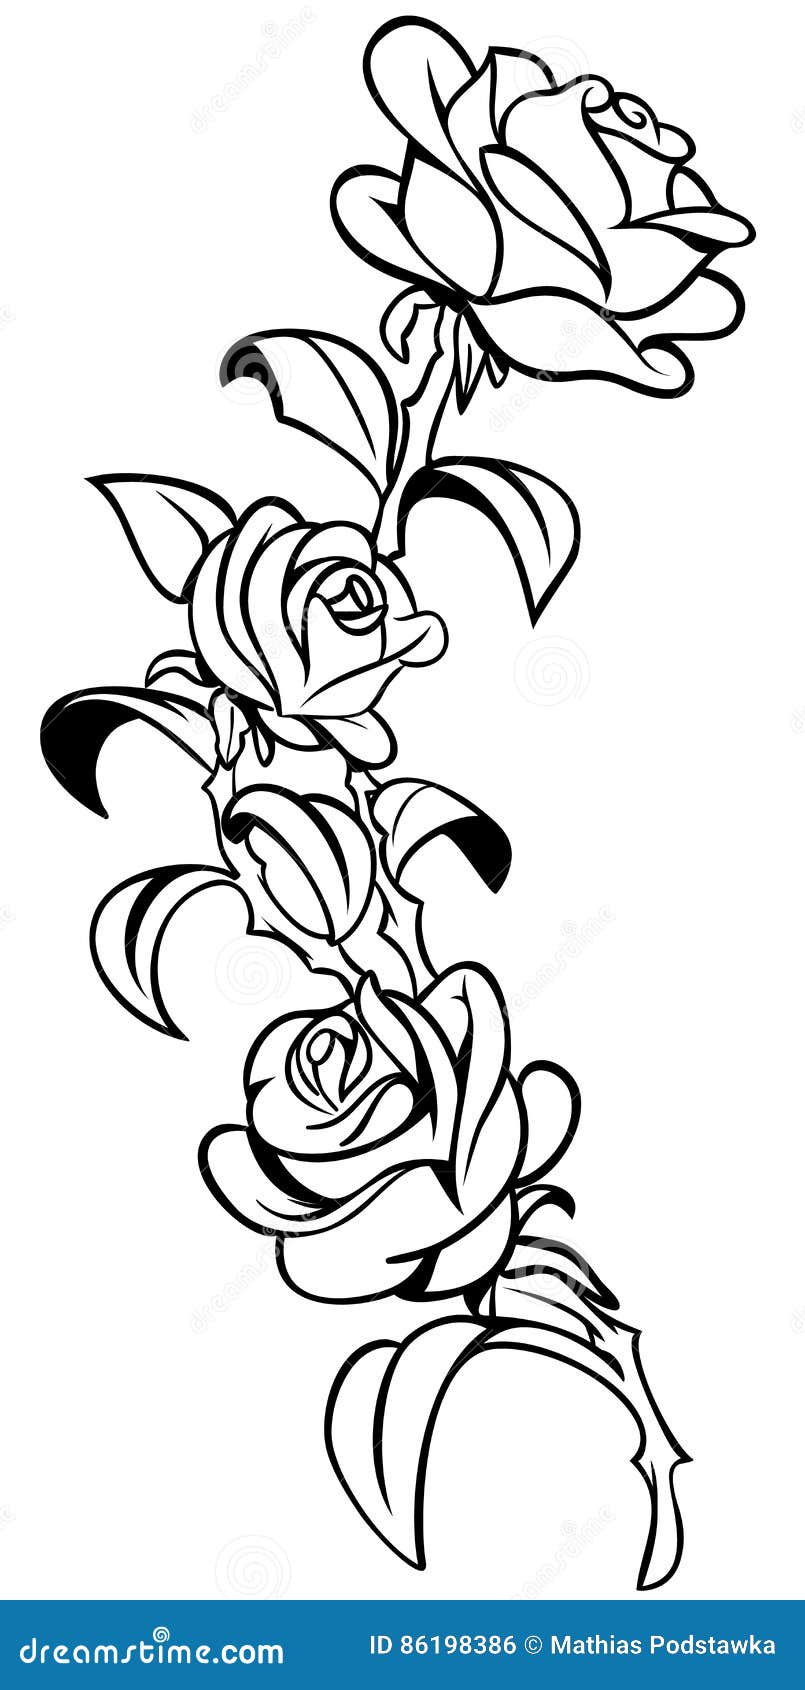 Rose Tattoo stock vector. Illustration of dead, black - 86198386